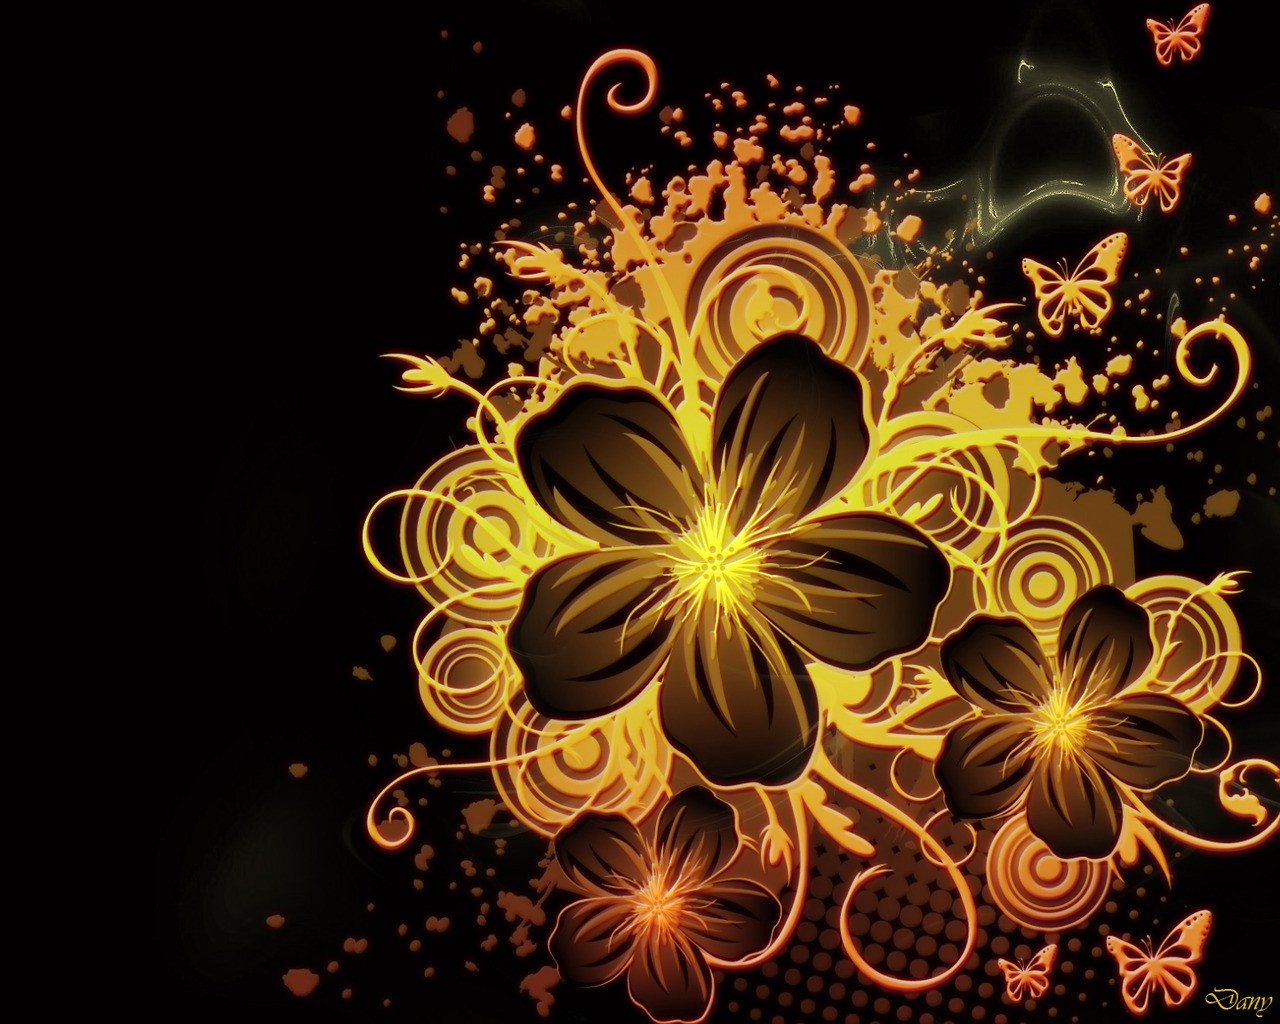 3D Flower Wallpapers for Desktop - WallpaperSafari